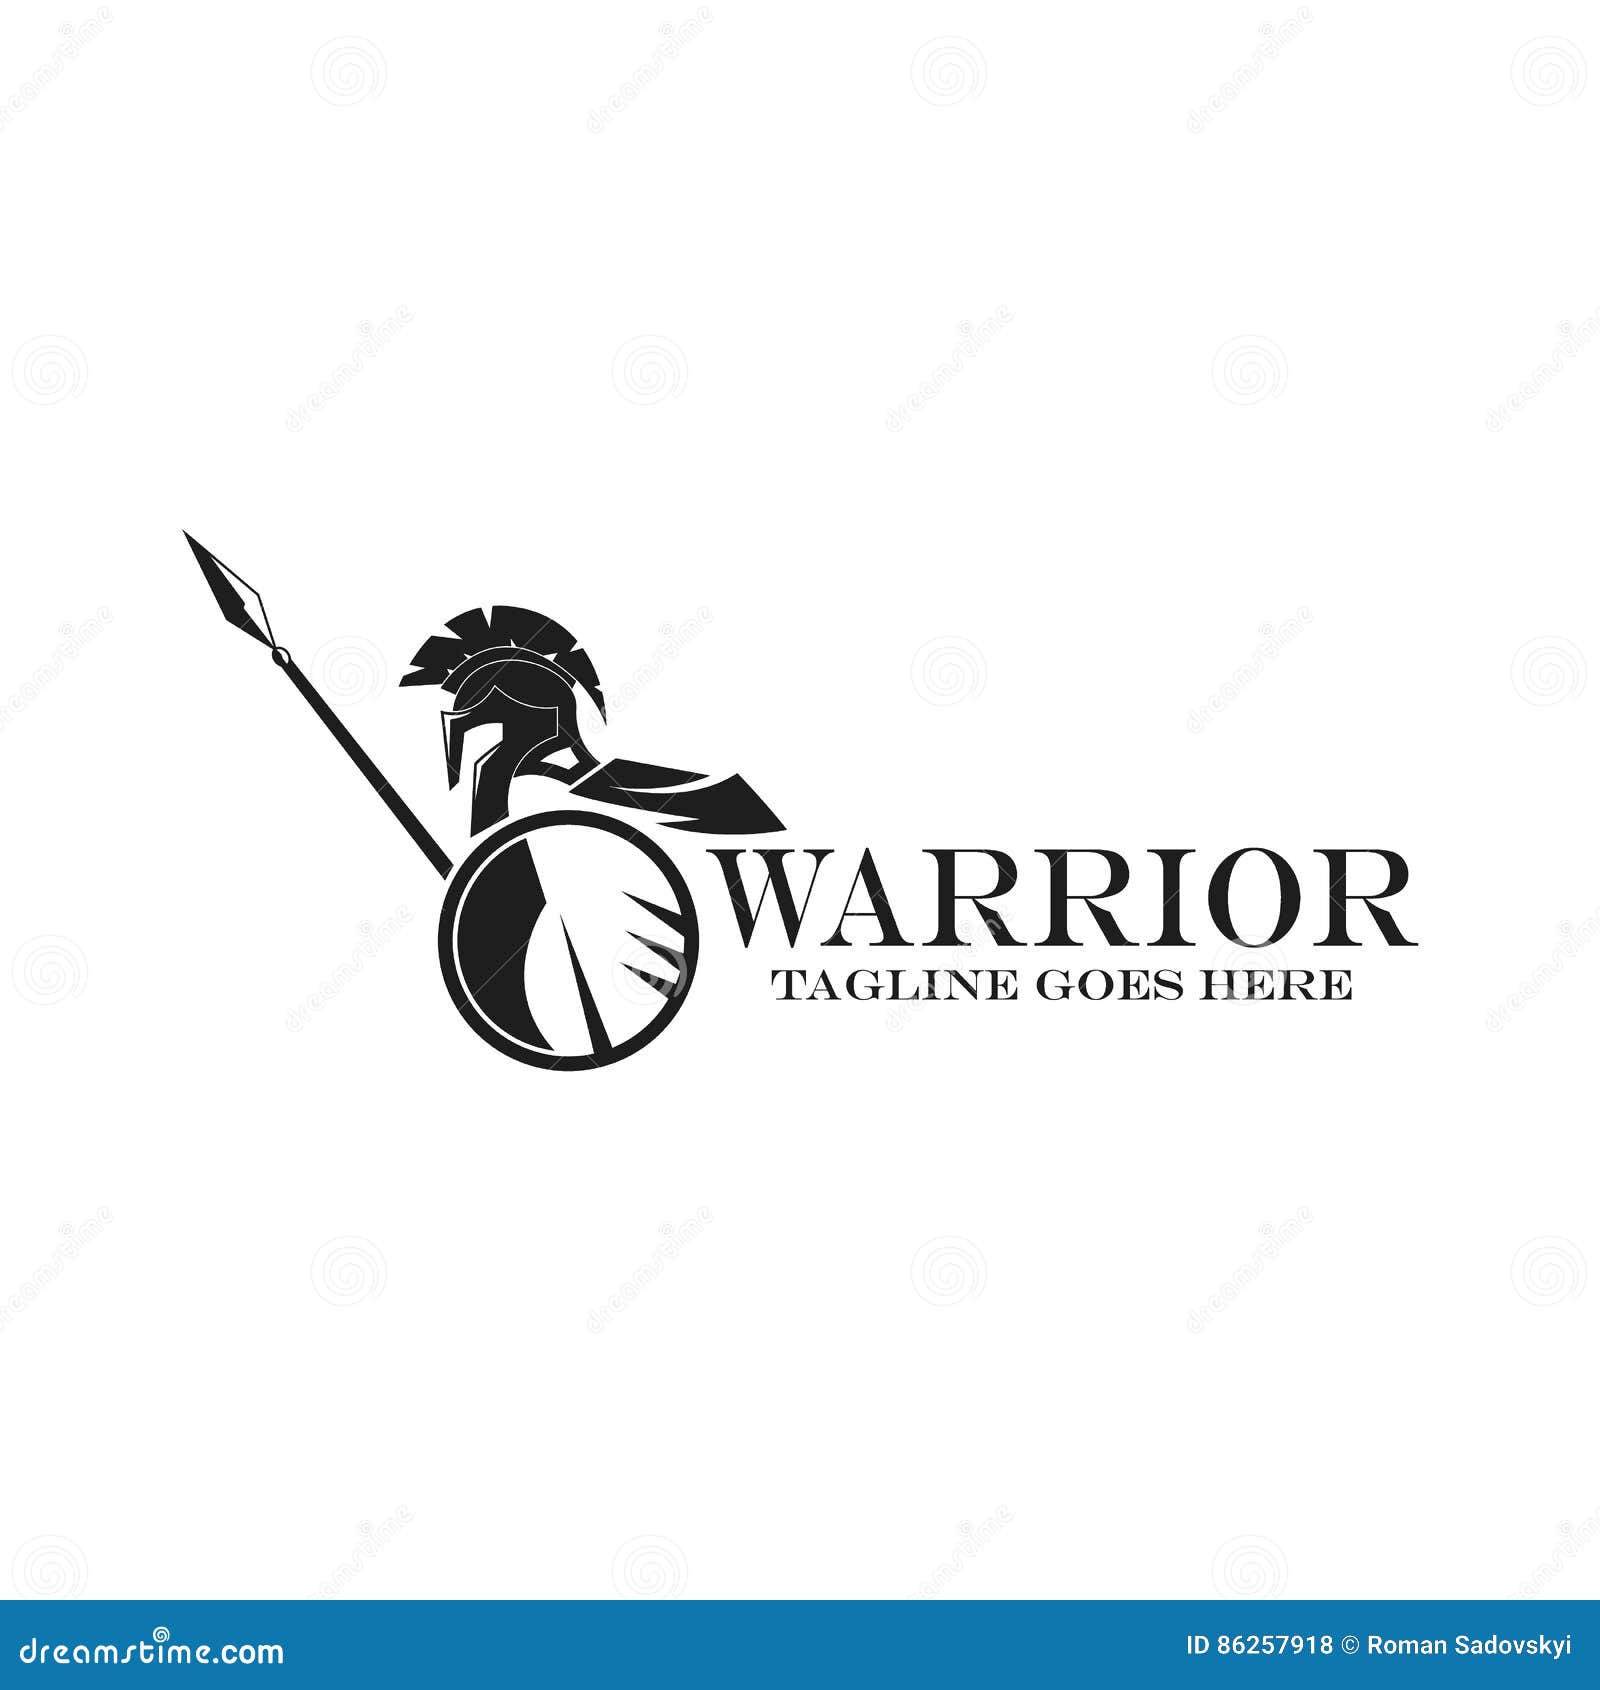 Warrior Software 